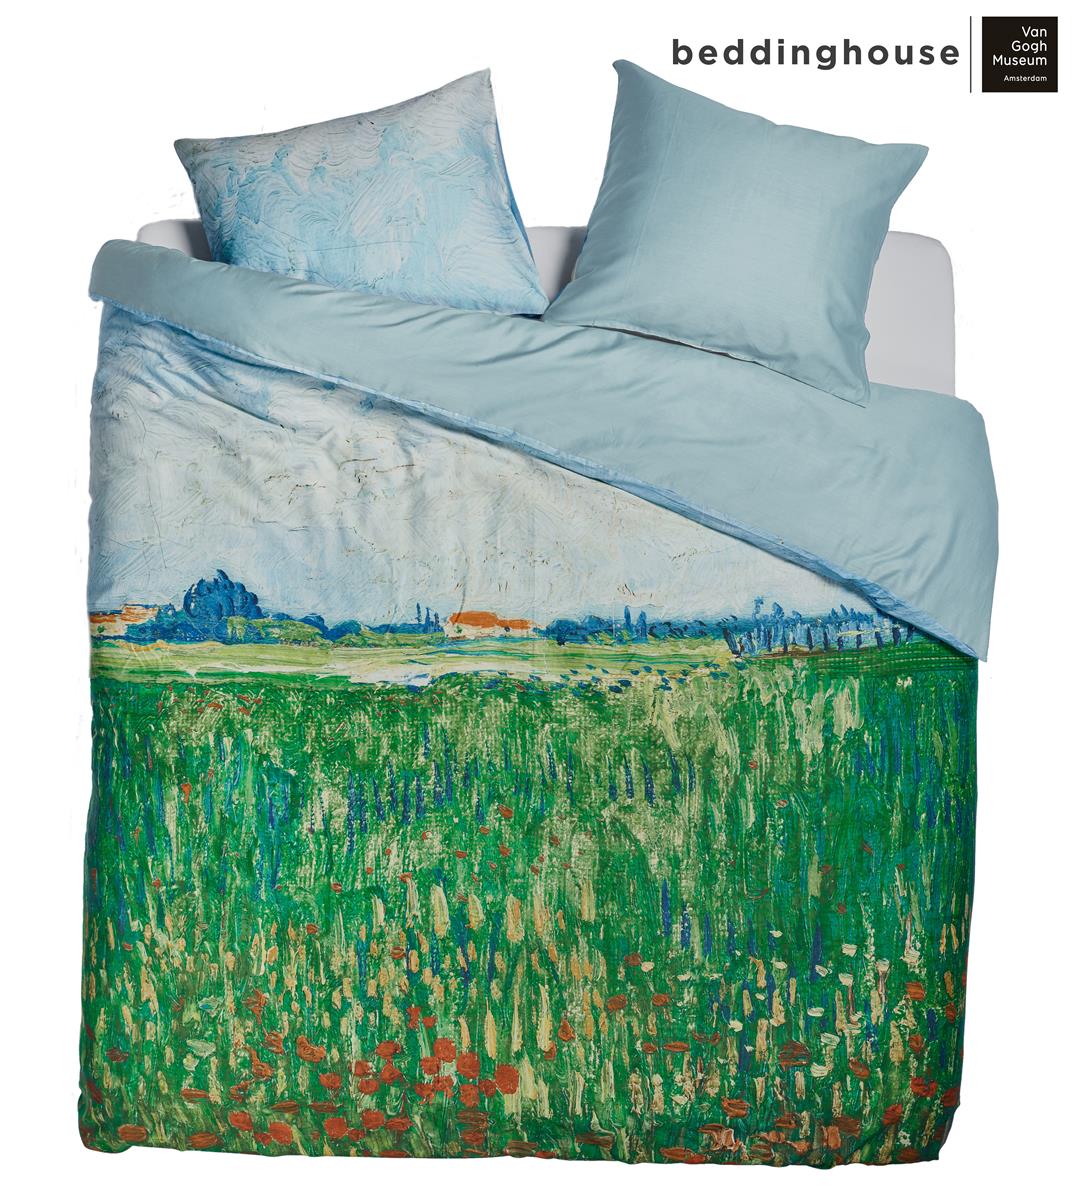 Beddinghouse x Van Gogh Museum Field With Poppies Dekbedovertrek - Groen - 240 x 200/220 cm + 2x 60 